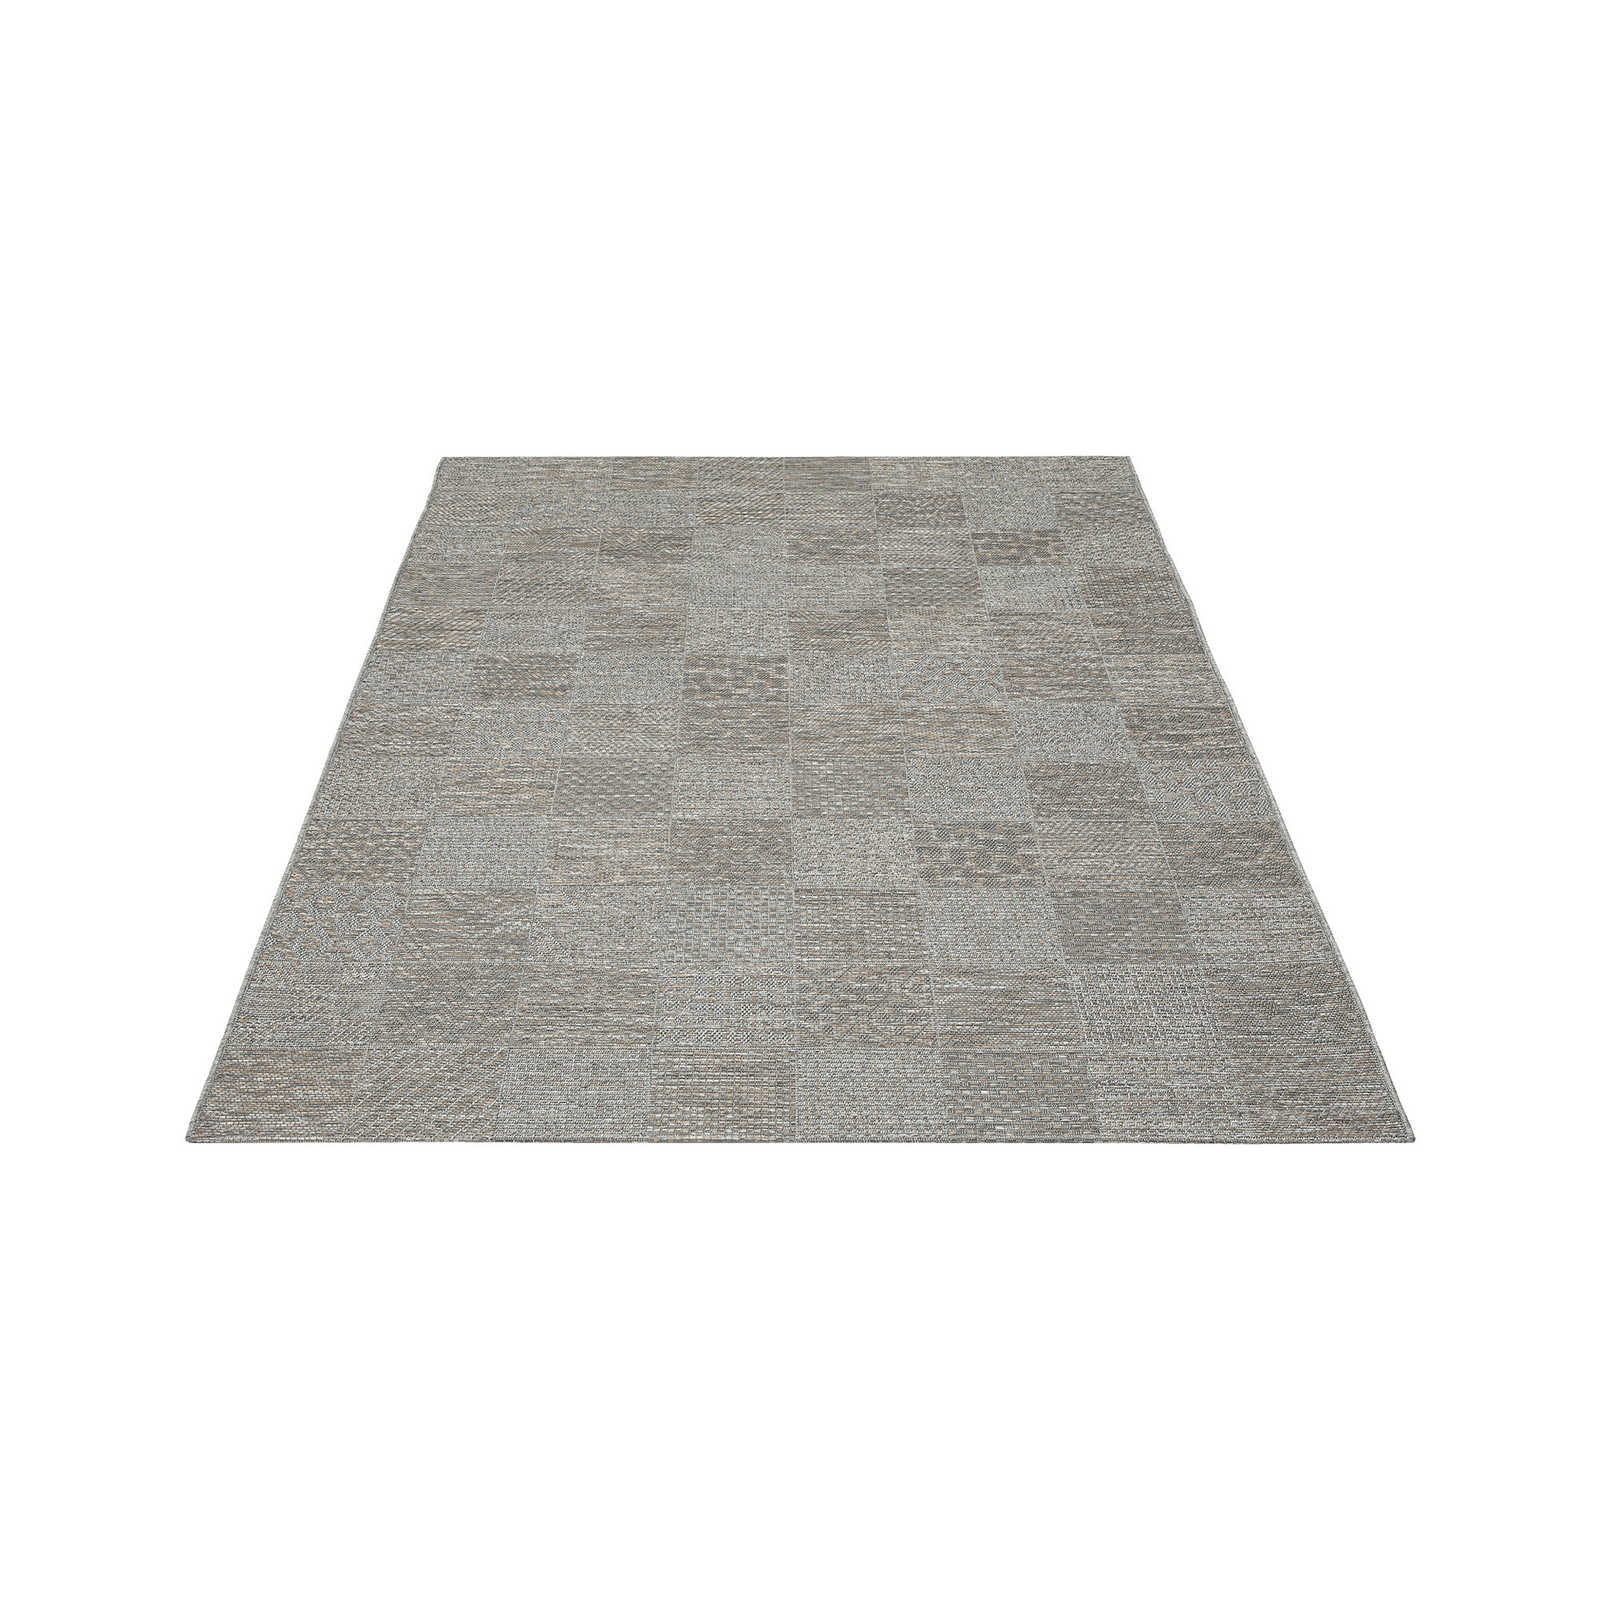 Schlichter Outdoor Teppich in Greige – 220 x 160 cm
